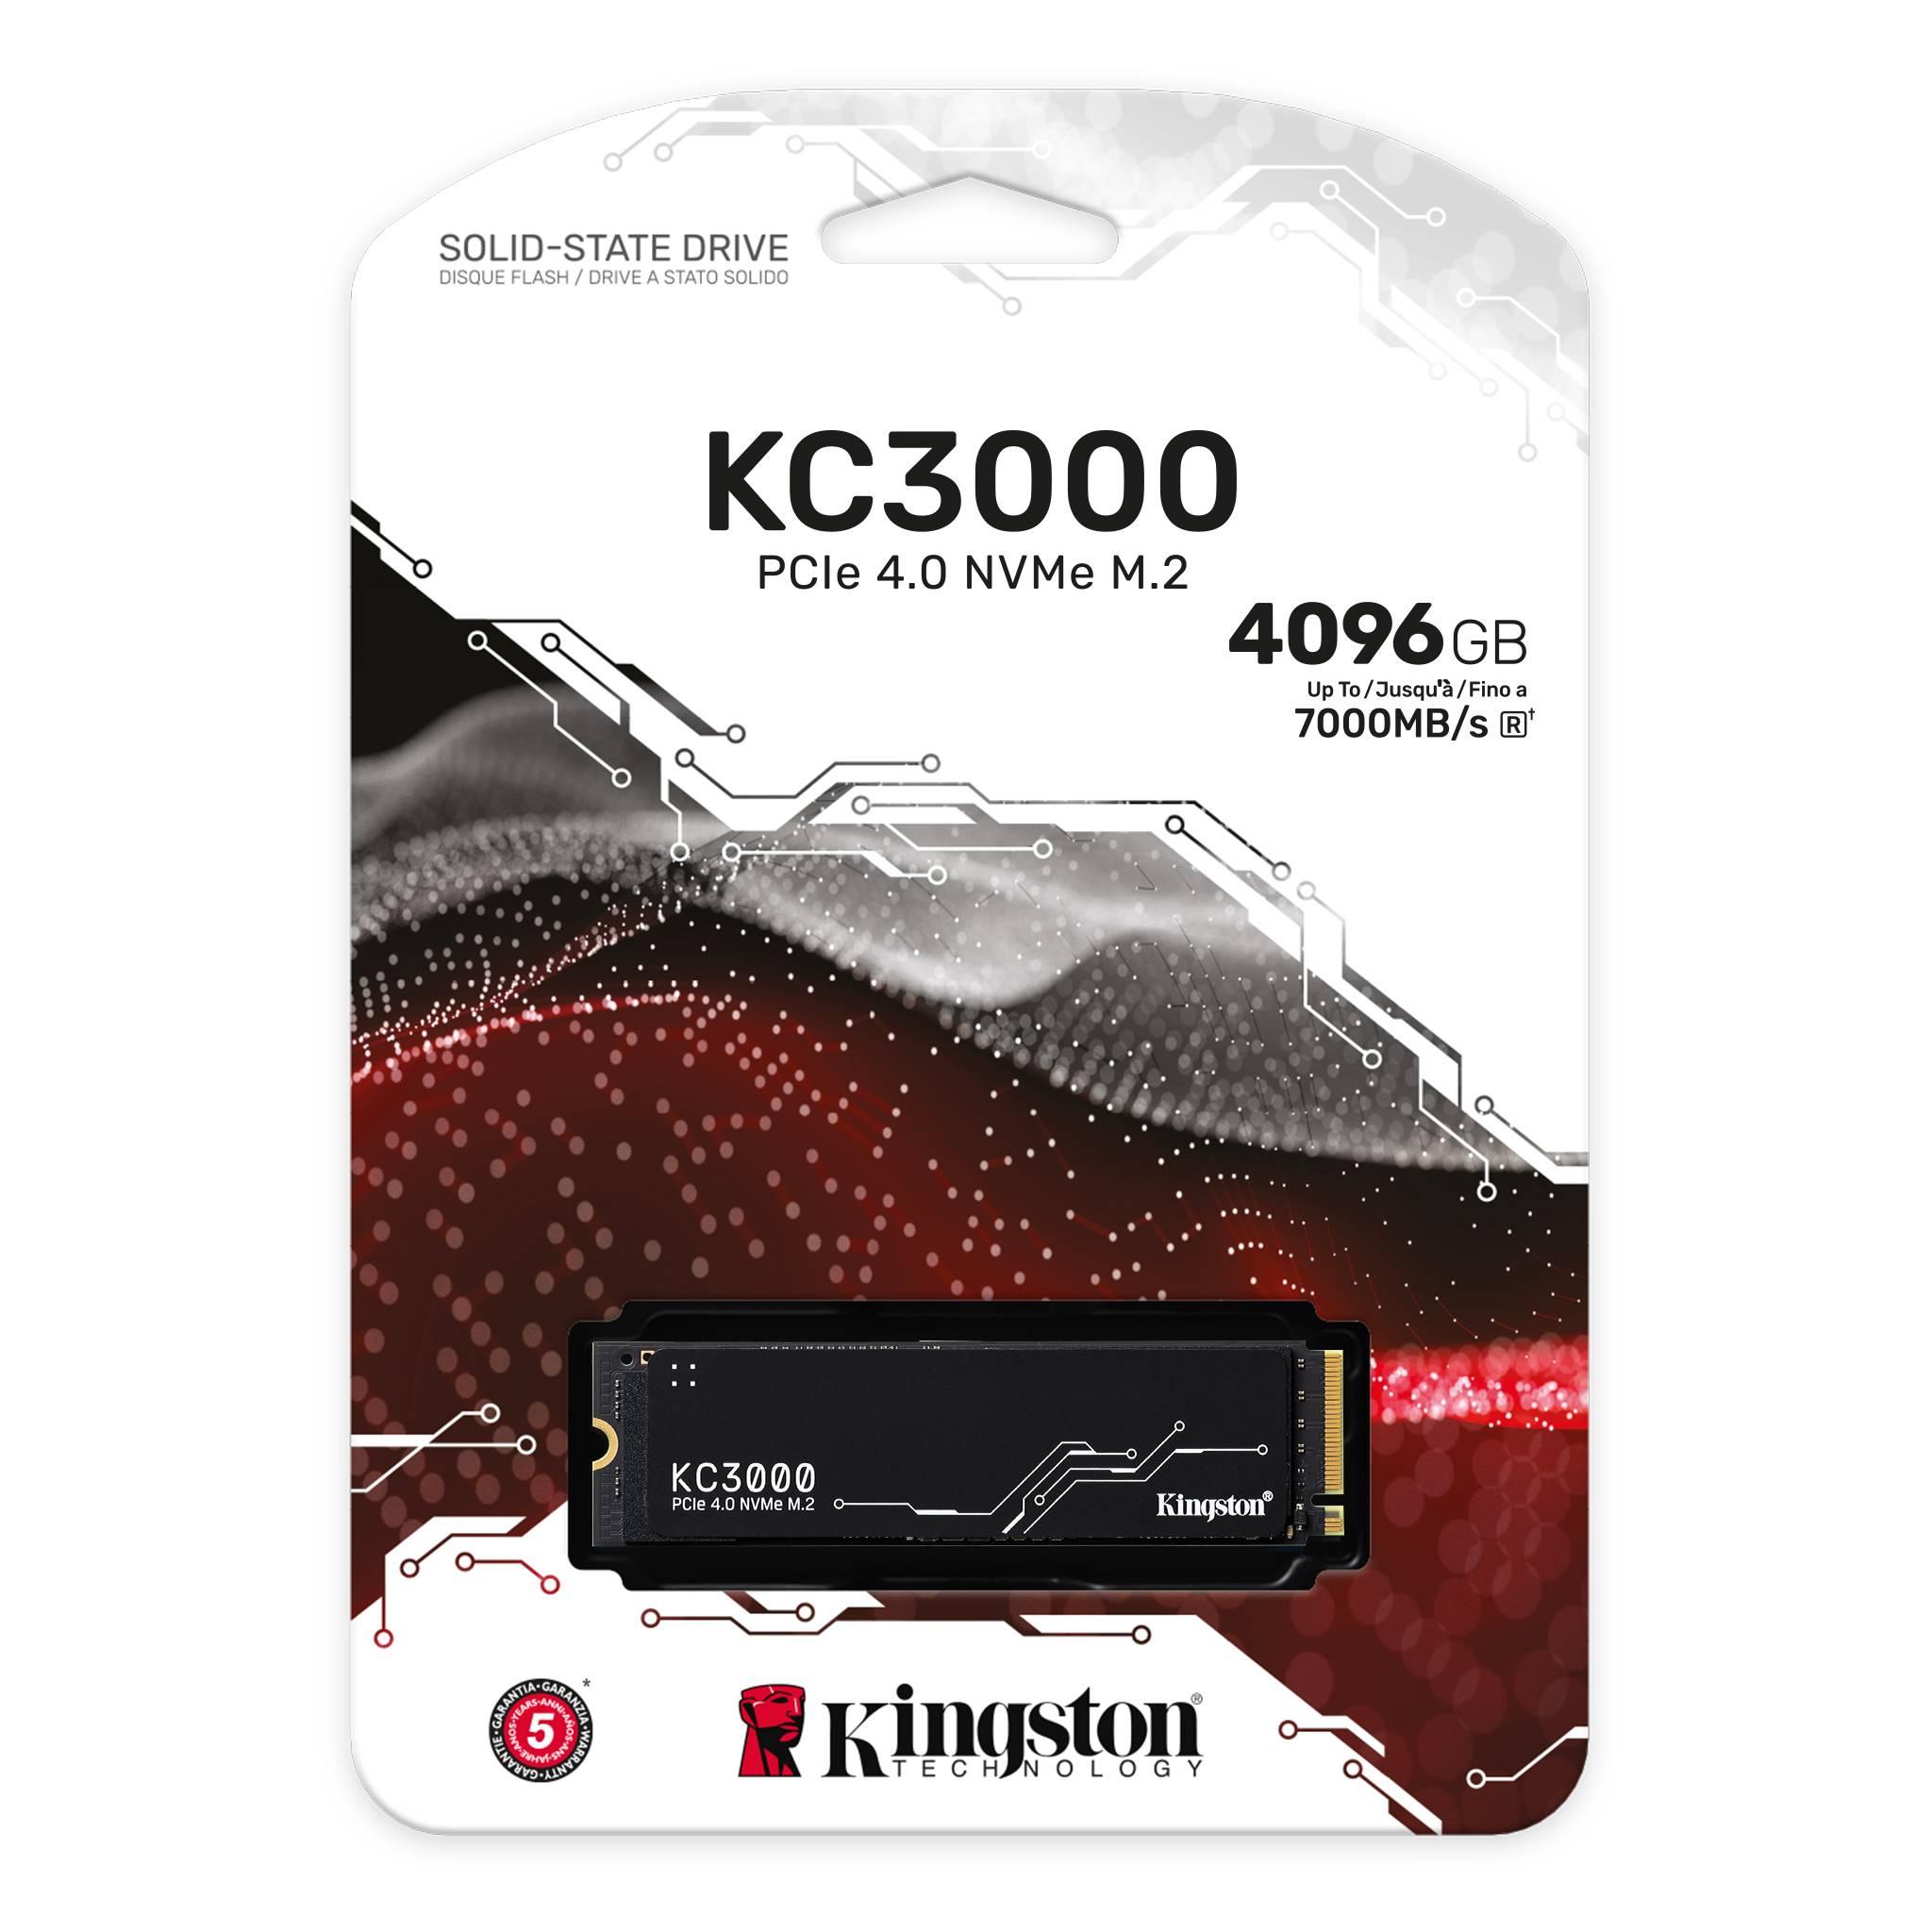 KINGSTON 4096G KC3000 PCIE 4.0 NVME M.2 SSD